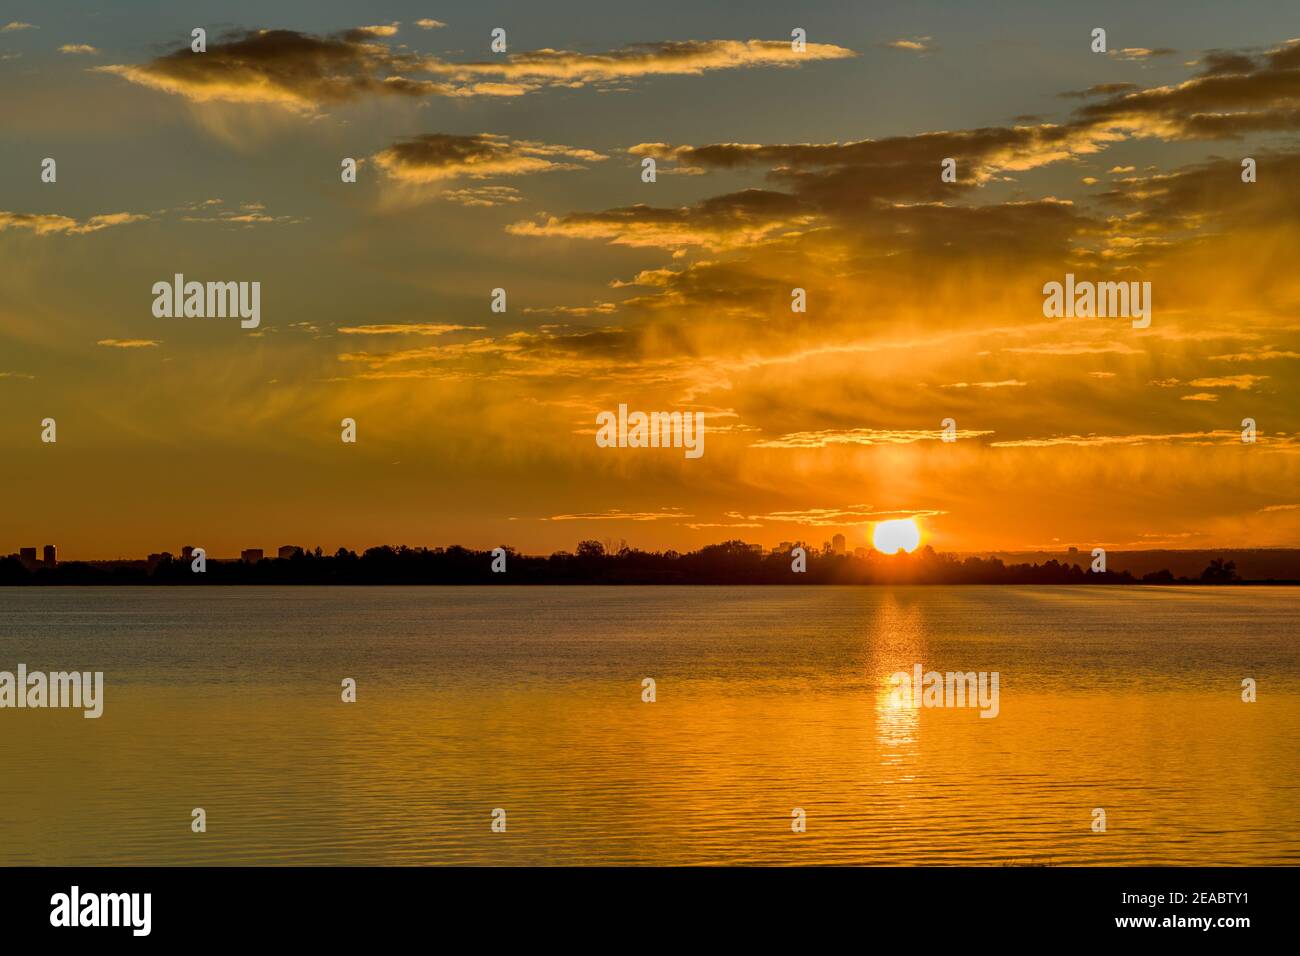 Sunrise at City Lake - A colorful autumn sunrise at Marston Lake, Denver, Colorado, USA. Stock Photo